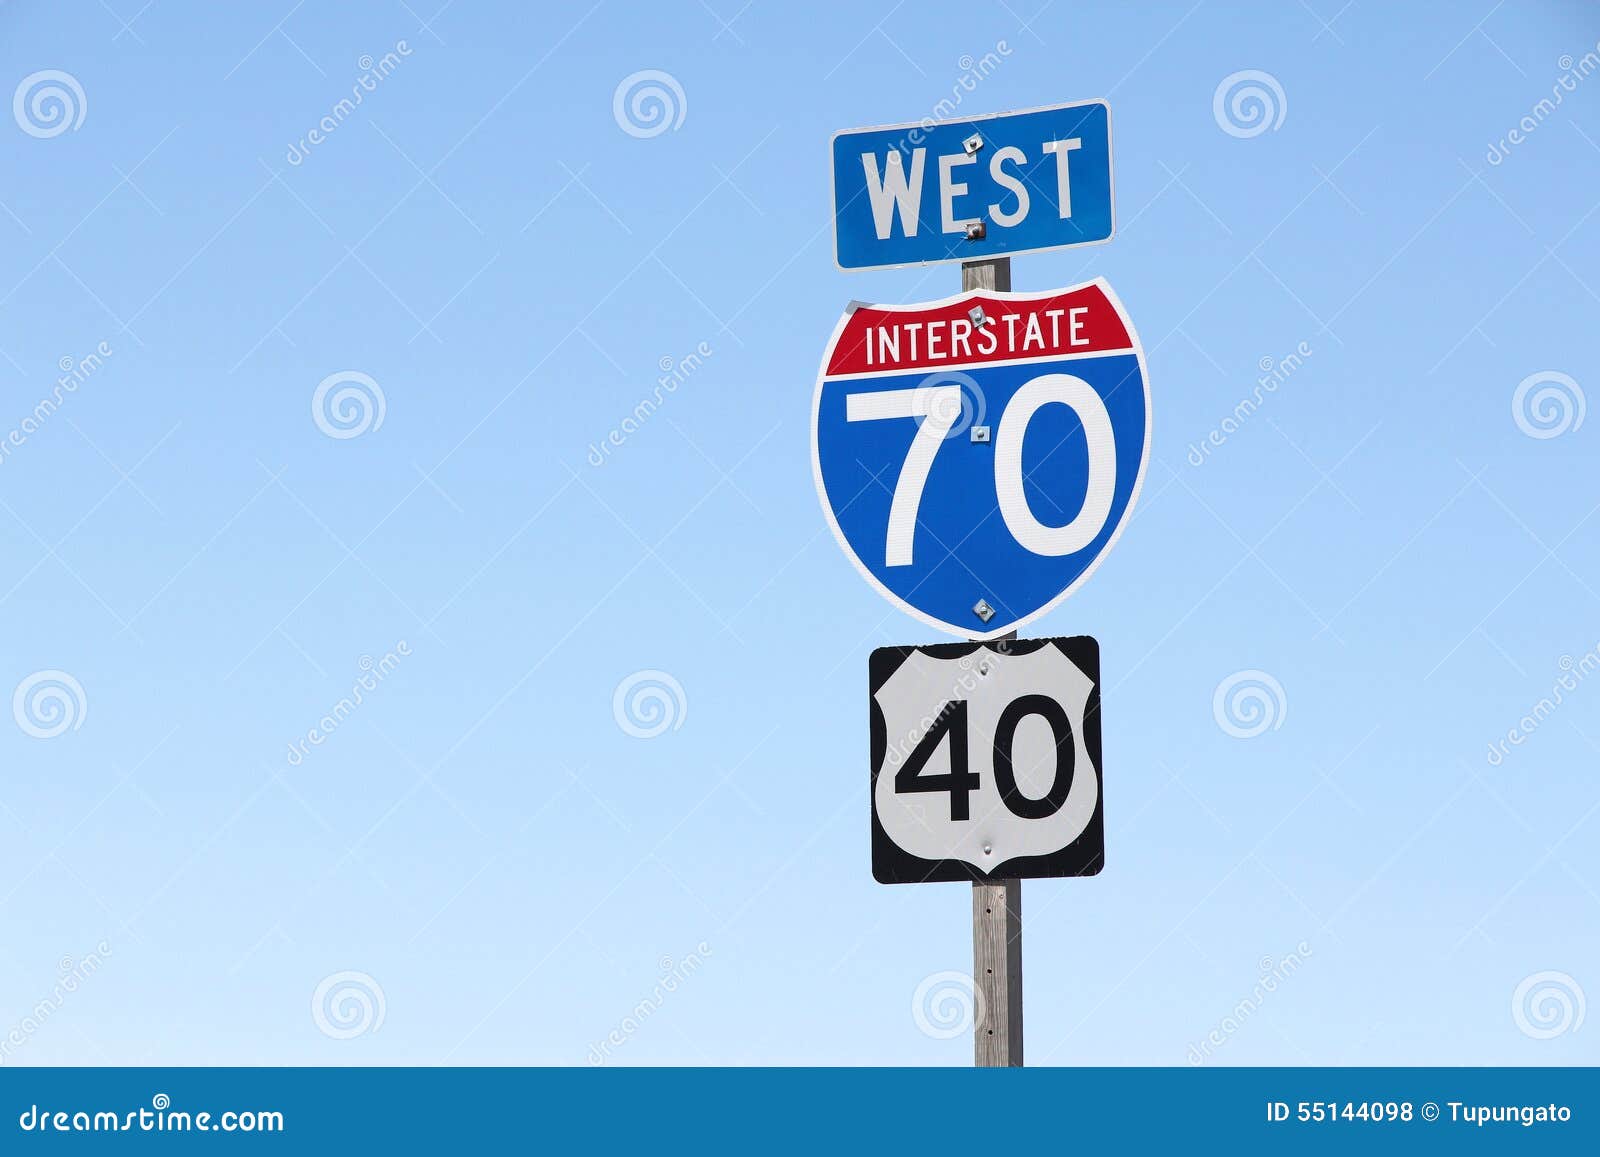 interstate 70